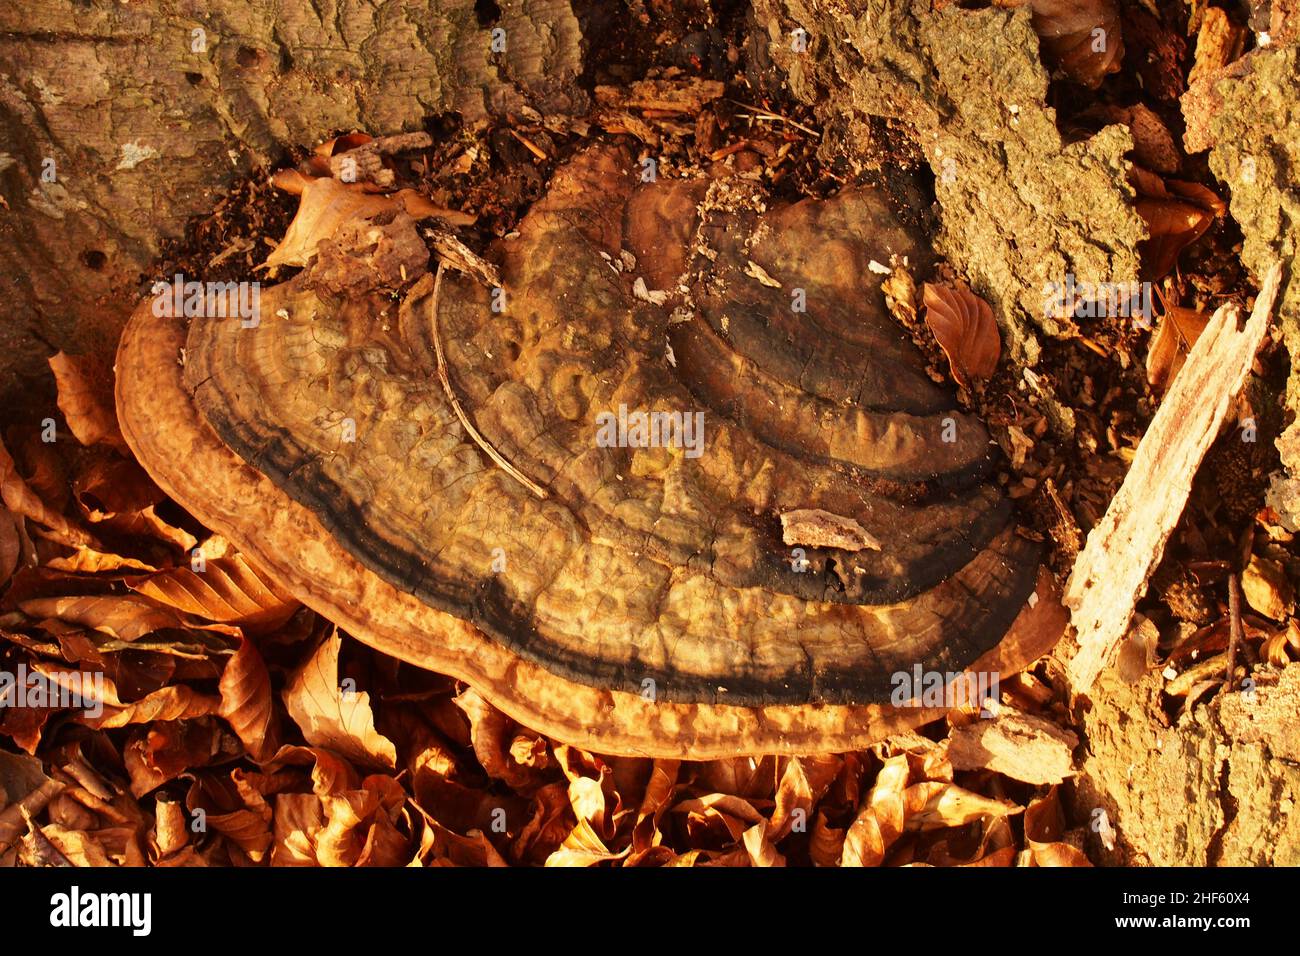 Un très vieux champignon de crochet au fond d'un ancien hêtre entouré par l'écorce d'arbre mort et des feuilles d'hiver dorées et tombées Banque D'Images